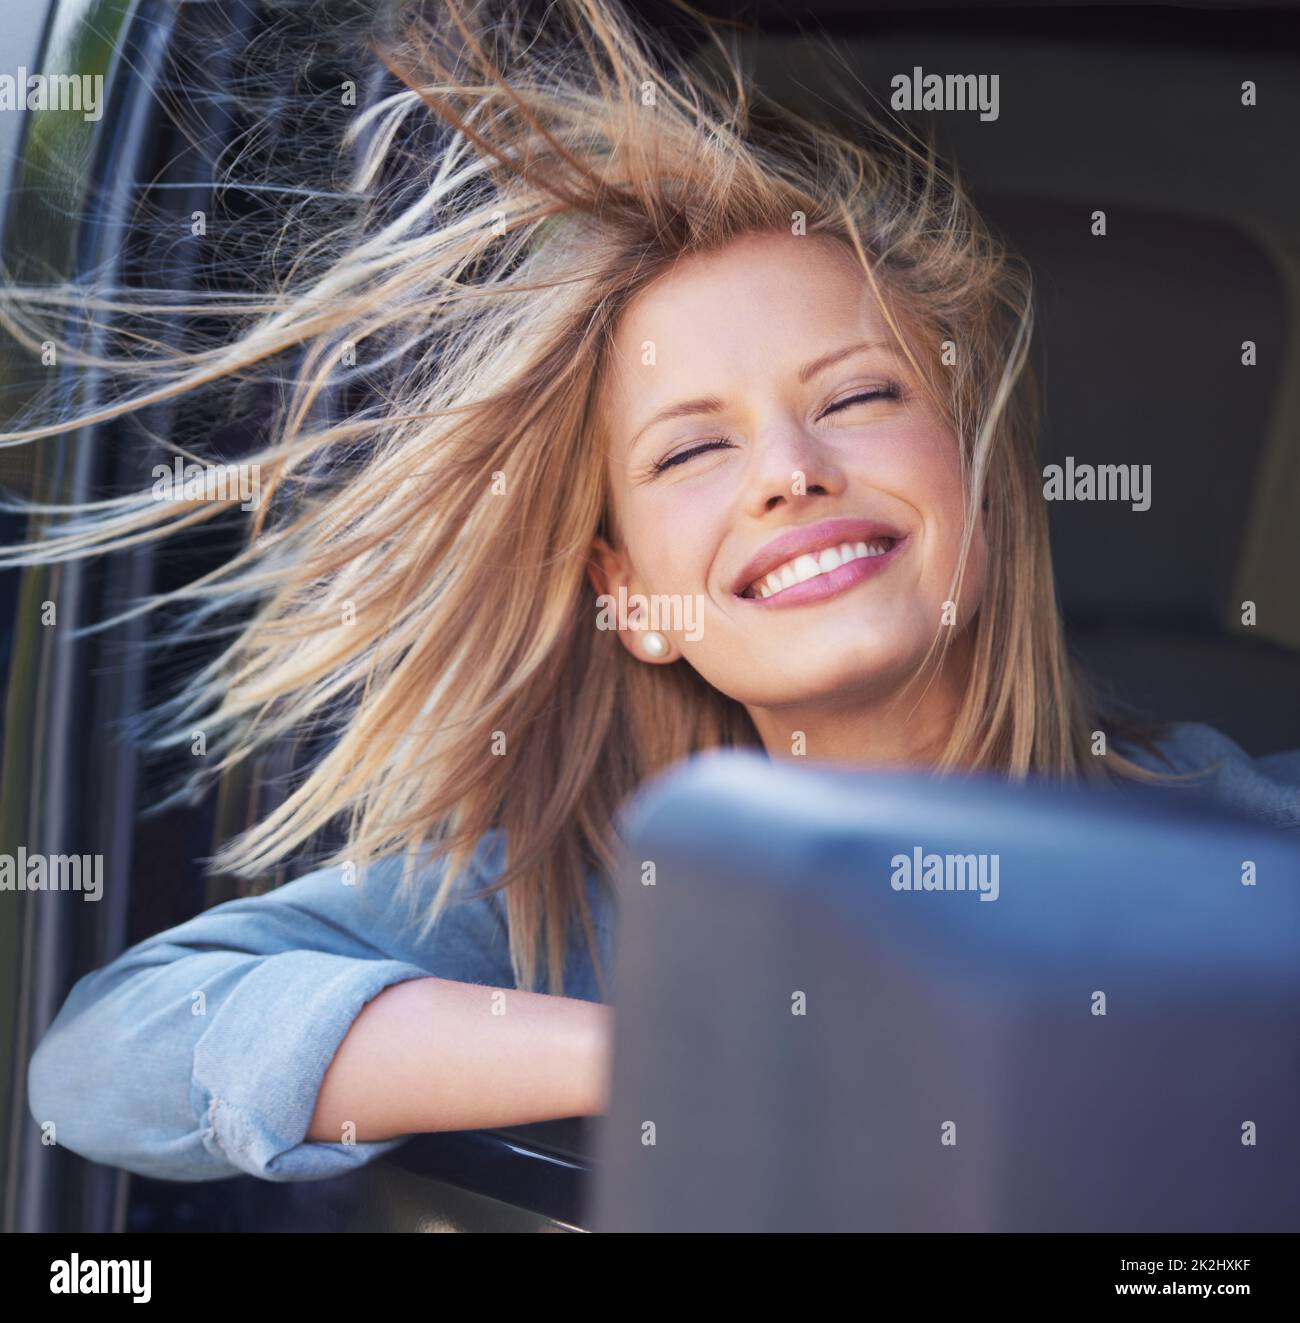 Spüren Sie den Wind in Ihren Haaren Eine junge Frau spürt die Brise in ihren Haaren durch ein offenes Autofenster. Stockfoto